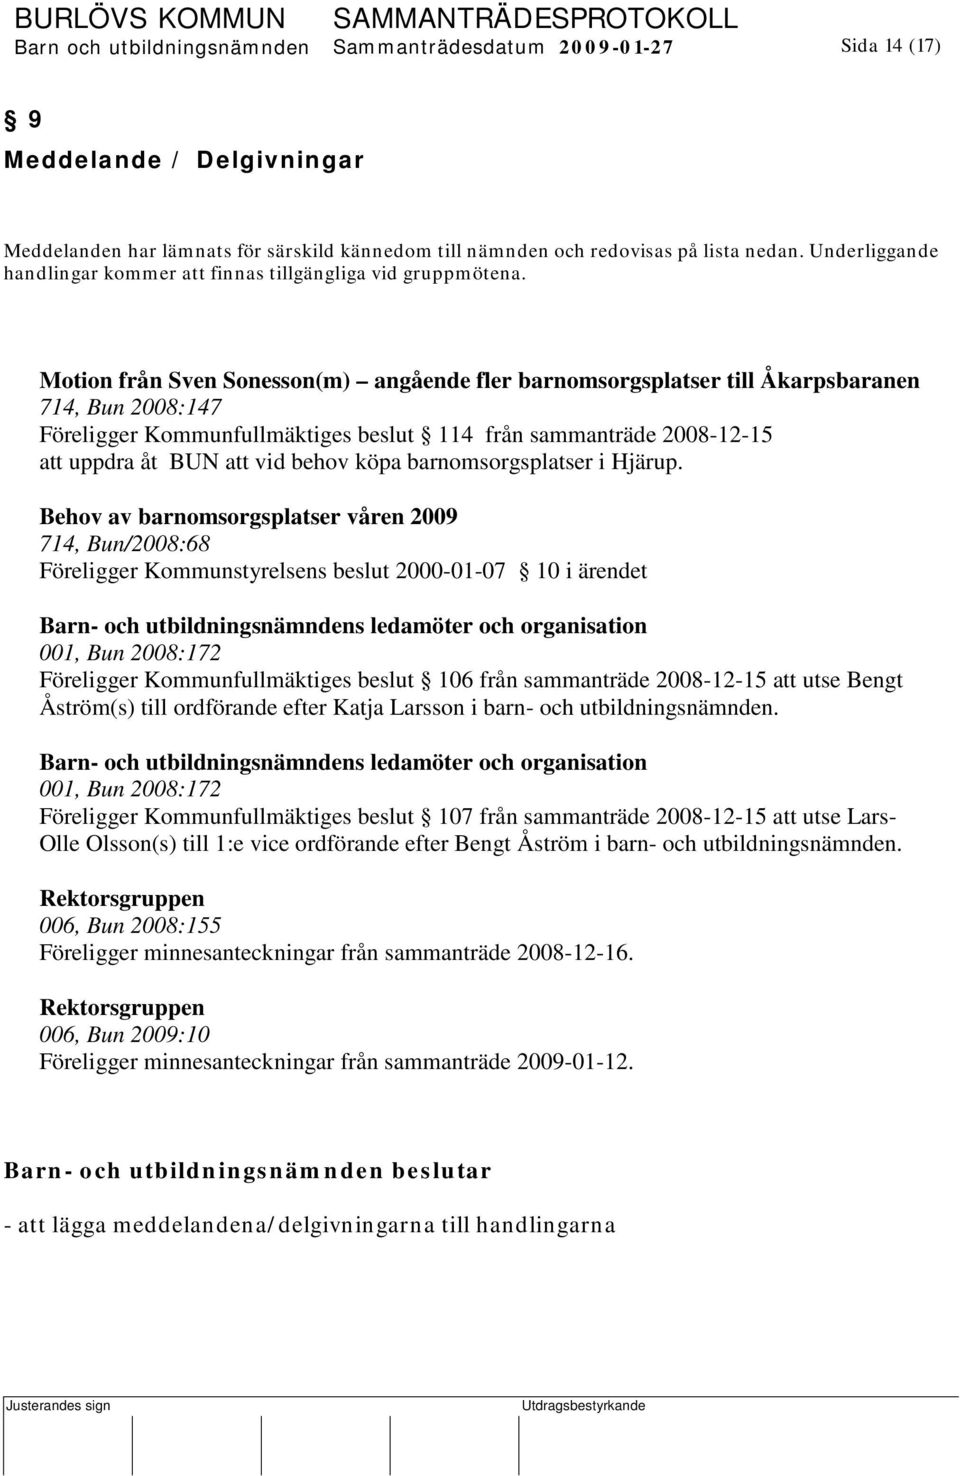 Motion från Sven Sonesson(m) angående fler barnomsorgsplatser till Åkarpsbaranen 714, Bun 2008:147 Föreligger Kommunfullmäktiges beslut 114 från sammanträde 2008-12-15 att uppdra åt BUN att vid behov